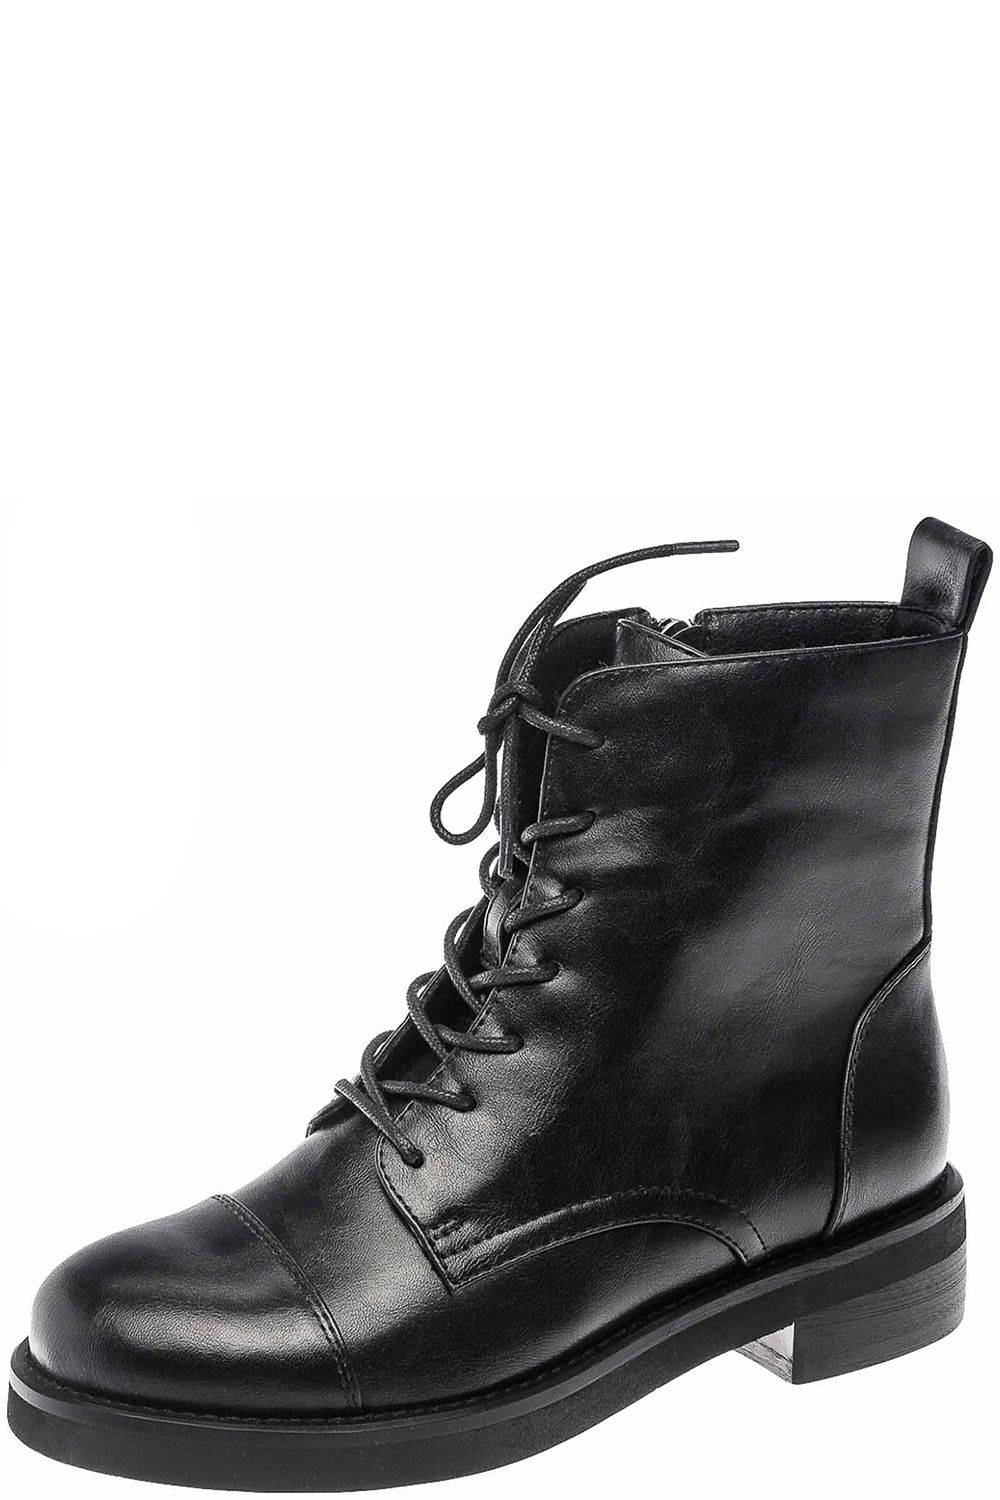 Ботинки Betsy, размер 37, цвет черный 998364/10-03 - фото 1